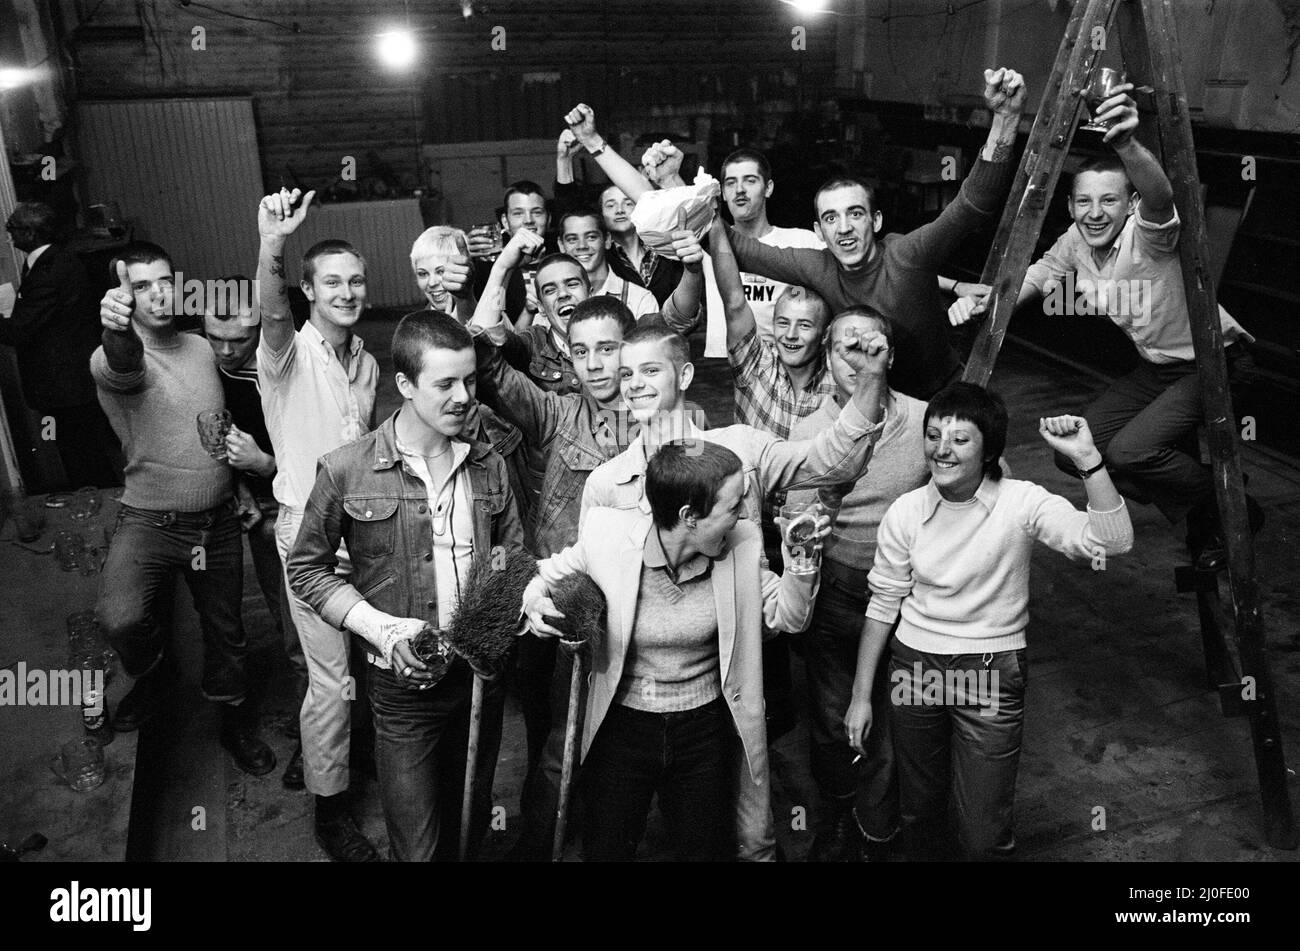 Une formule de paix a été trouvée par une titulaire de licence de Birmingham pour les punks et les skinheads qui se réunissent par la centaine chaque soir dans le centre-ville. La trêve entre les groupes rivaux a été refaite par Tom Pickering, propriétaire du Crown Pub, Station Street. Maintenant, des bandes de punks et de skinheads de toutes les parties de Birmingham et du pays noir se fanent au pub. 9th juillet 1979. Banque D'Images